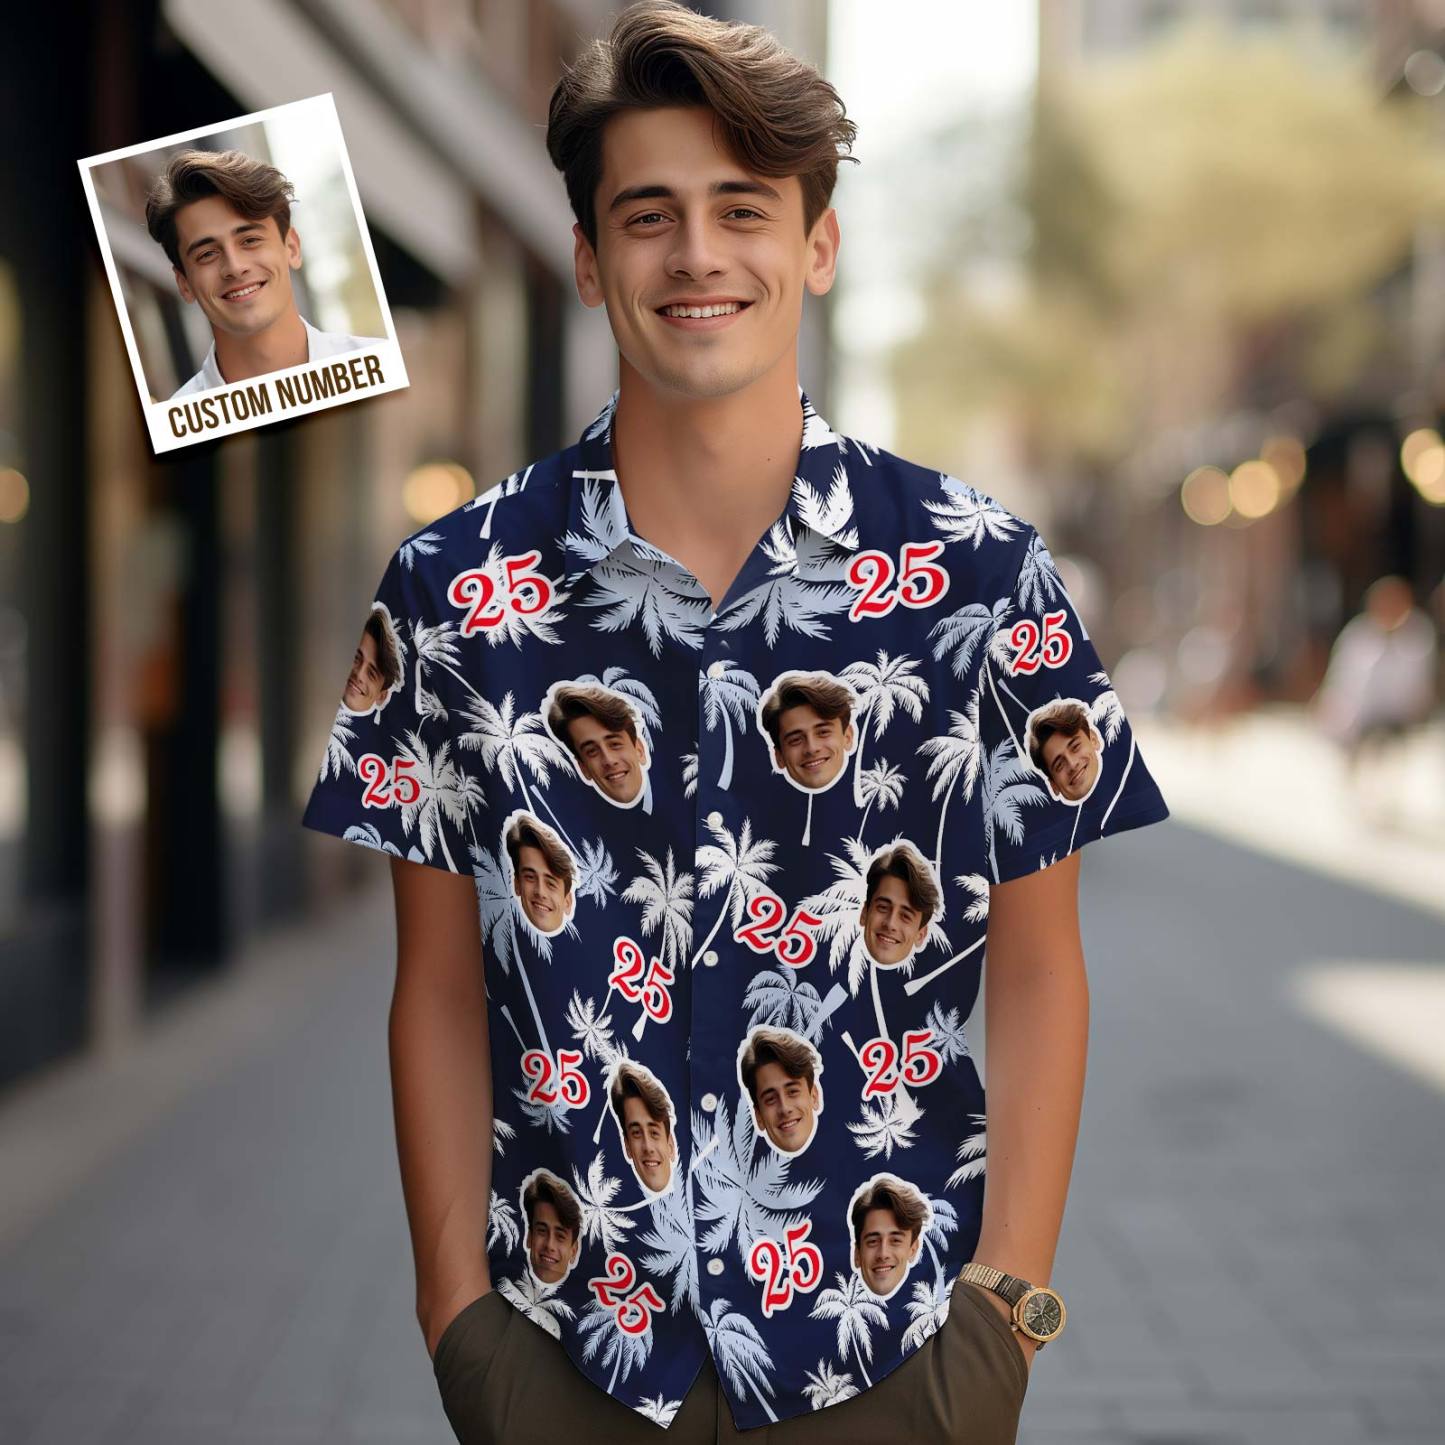 Personalisiertes Gesicht Und Zahl Zum Vatertag, Geburtstagsgeschenk, Hawaii-hemden, Kokosnussbaum-shirt - GesichtSocken